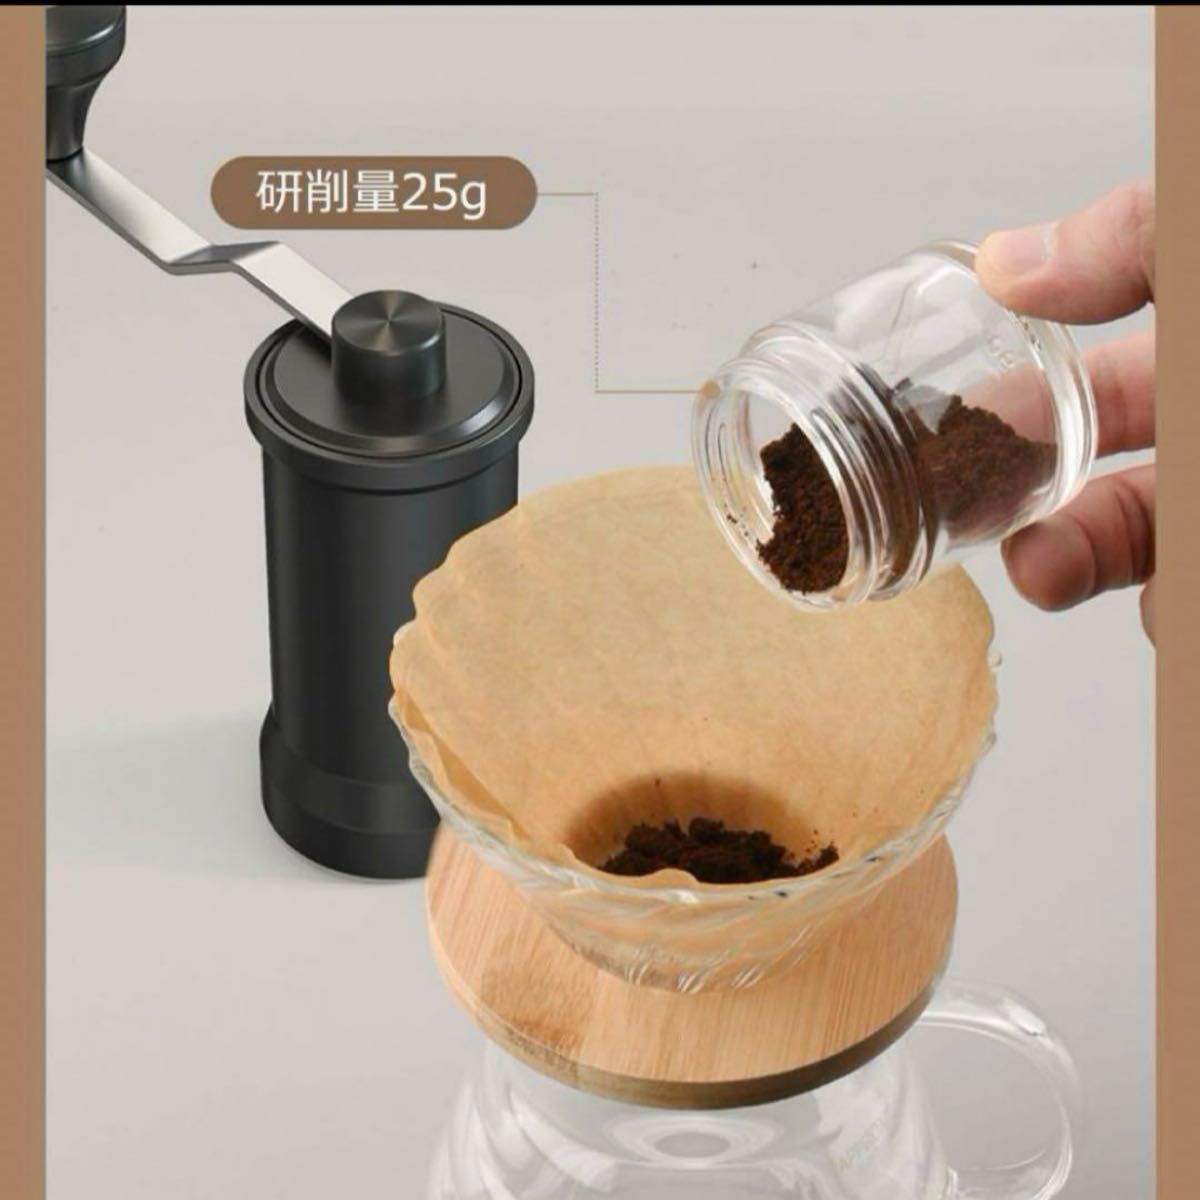 粗さ調整手挽きコーヒーミル 手動 DERGUAM コーヒーグラインダー 丸洗い可